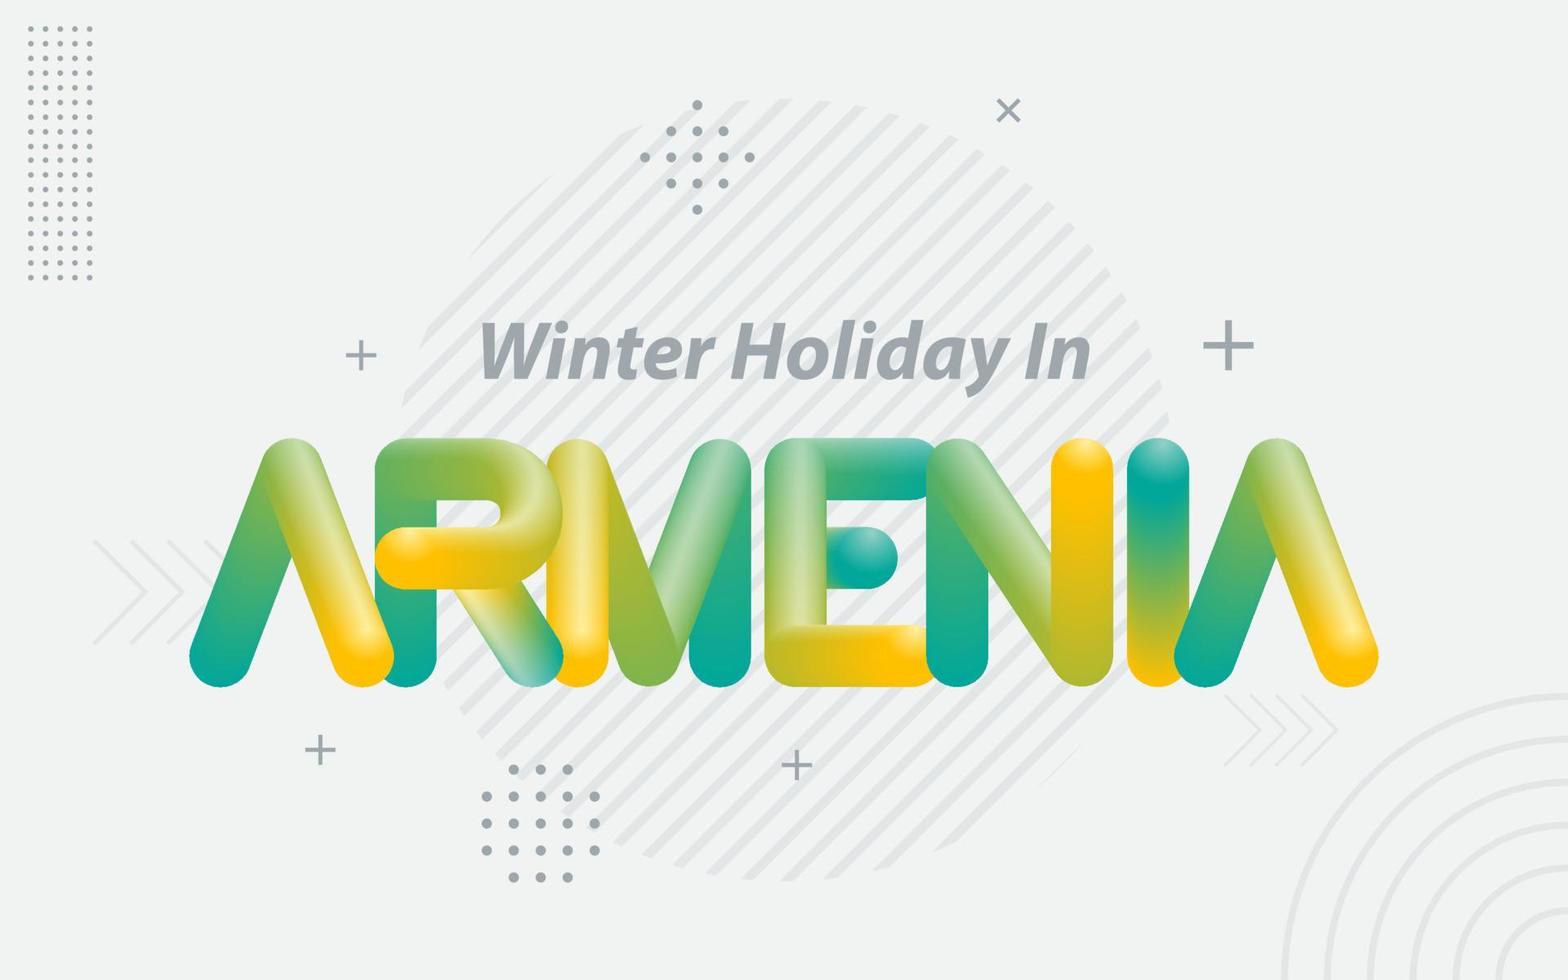 férias de inverno na Armênia. tipografia criativa com efeito de mistura 3d vetor